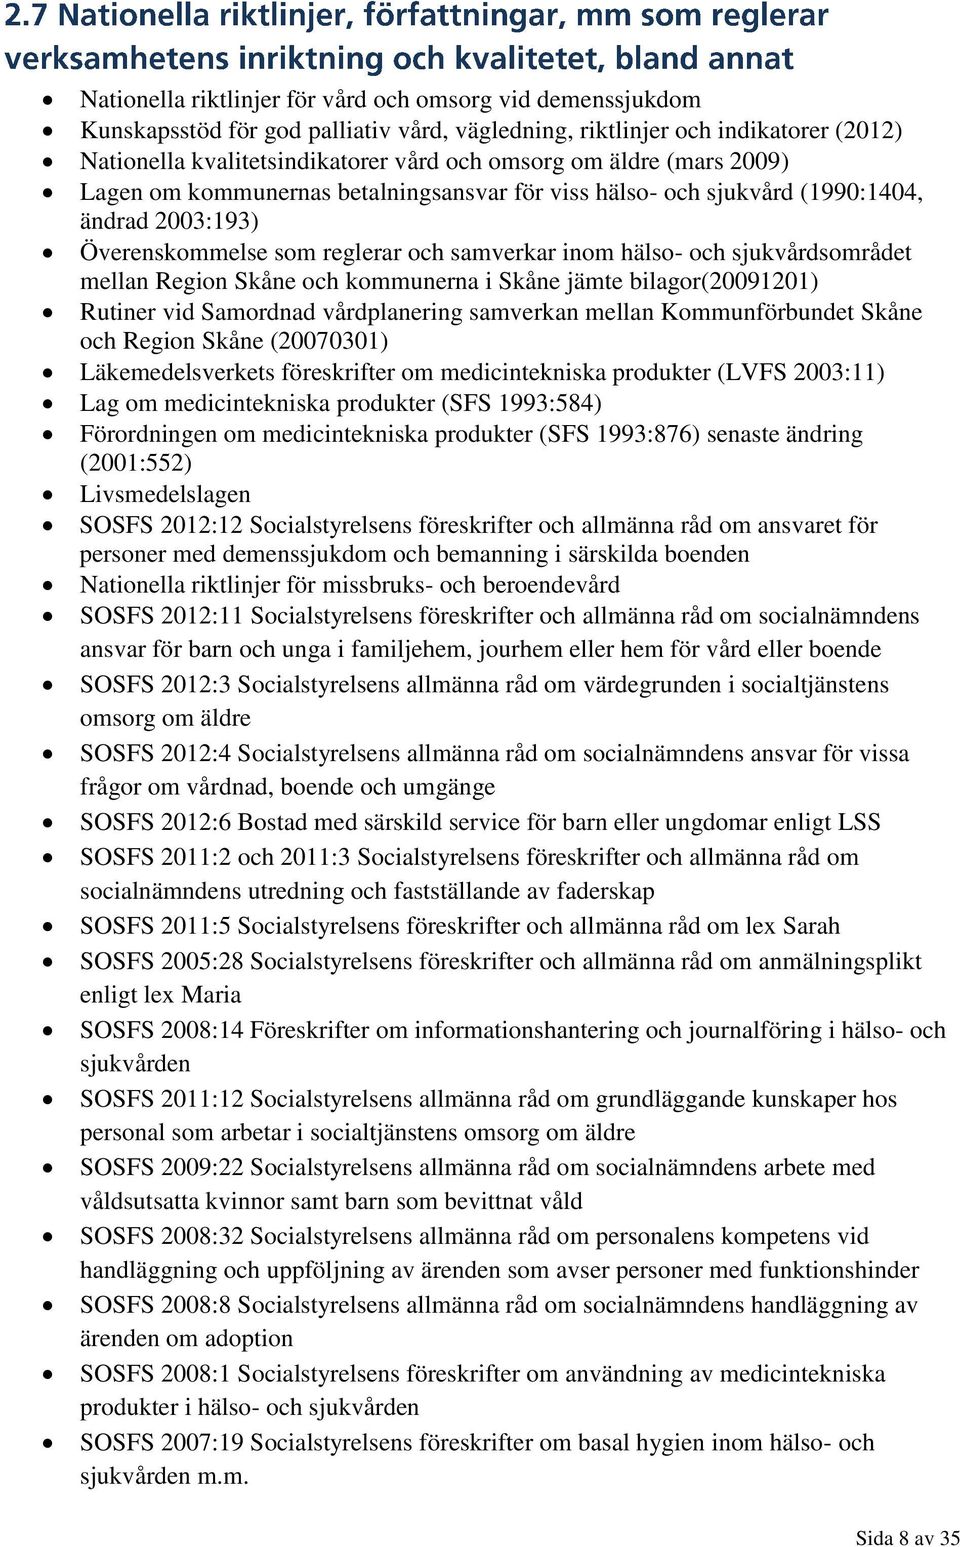 Skåne och kommunerna i Skåne jämte bilagor(20091201) Rutiner vid Samordnad vårdplanering samverkan mellan Kommunförbundet Skåne och Region Skåne (20070301) Läkemedelsverkets föreskrifter om